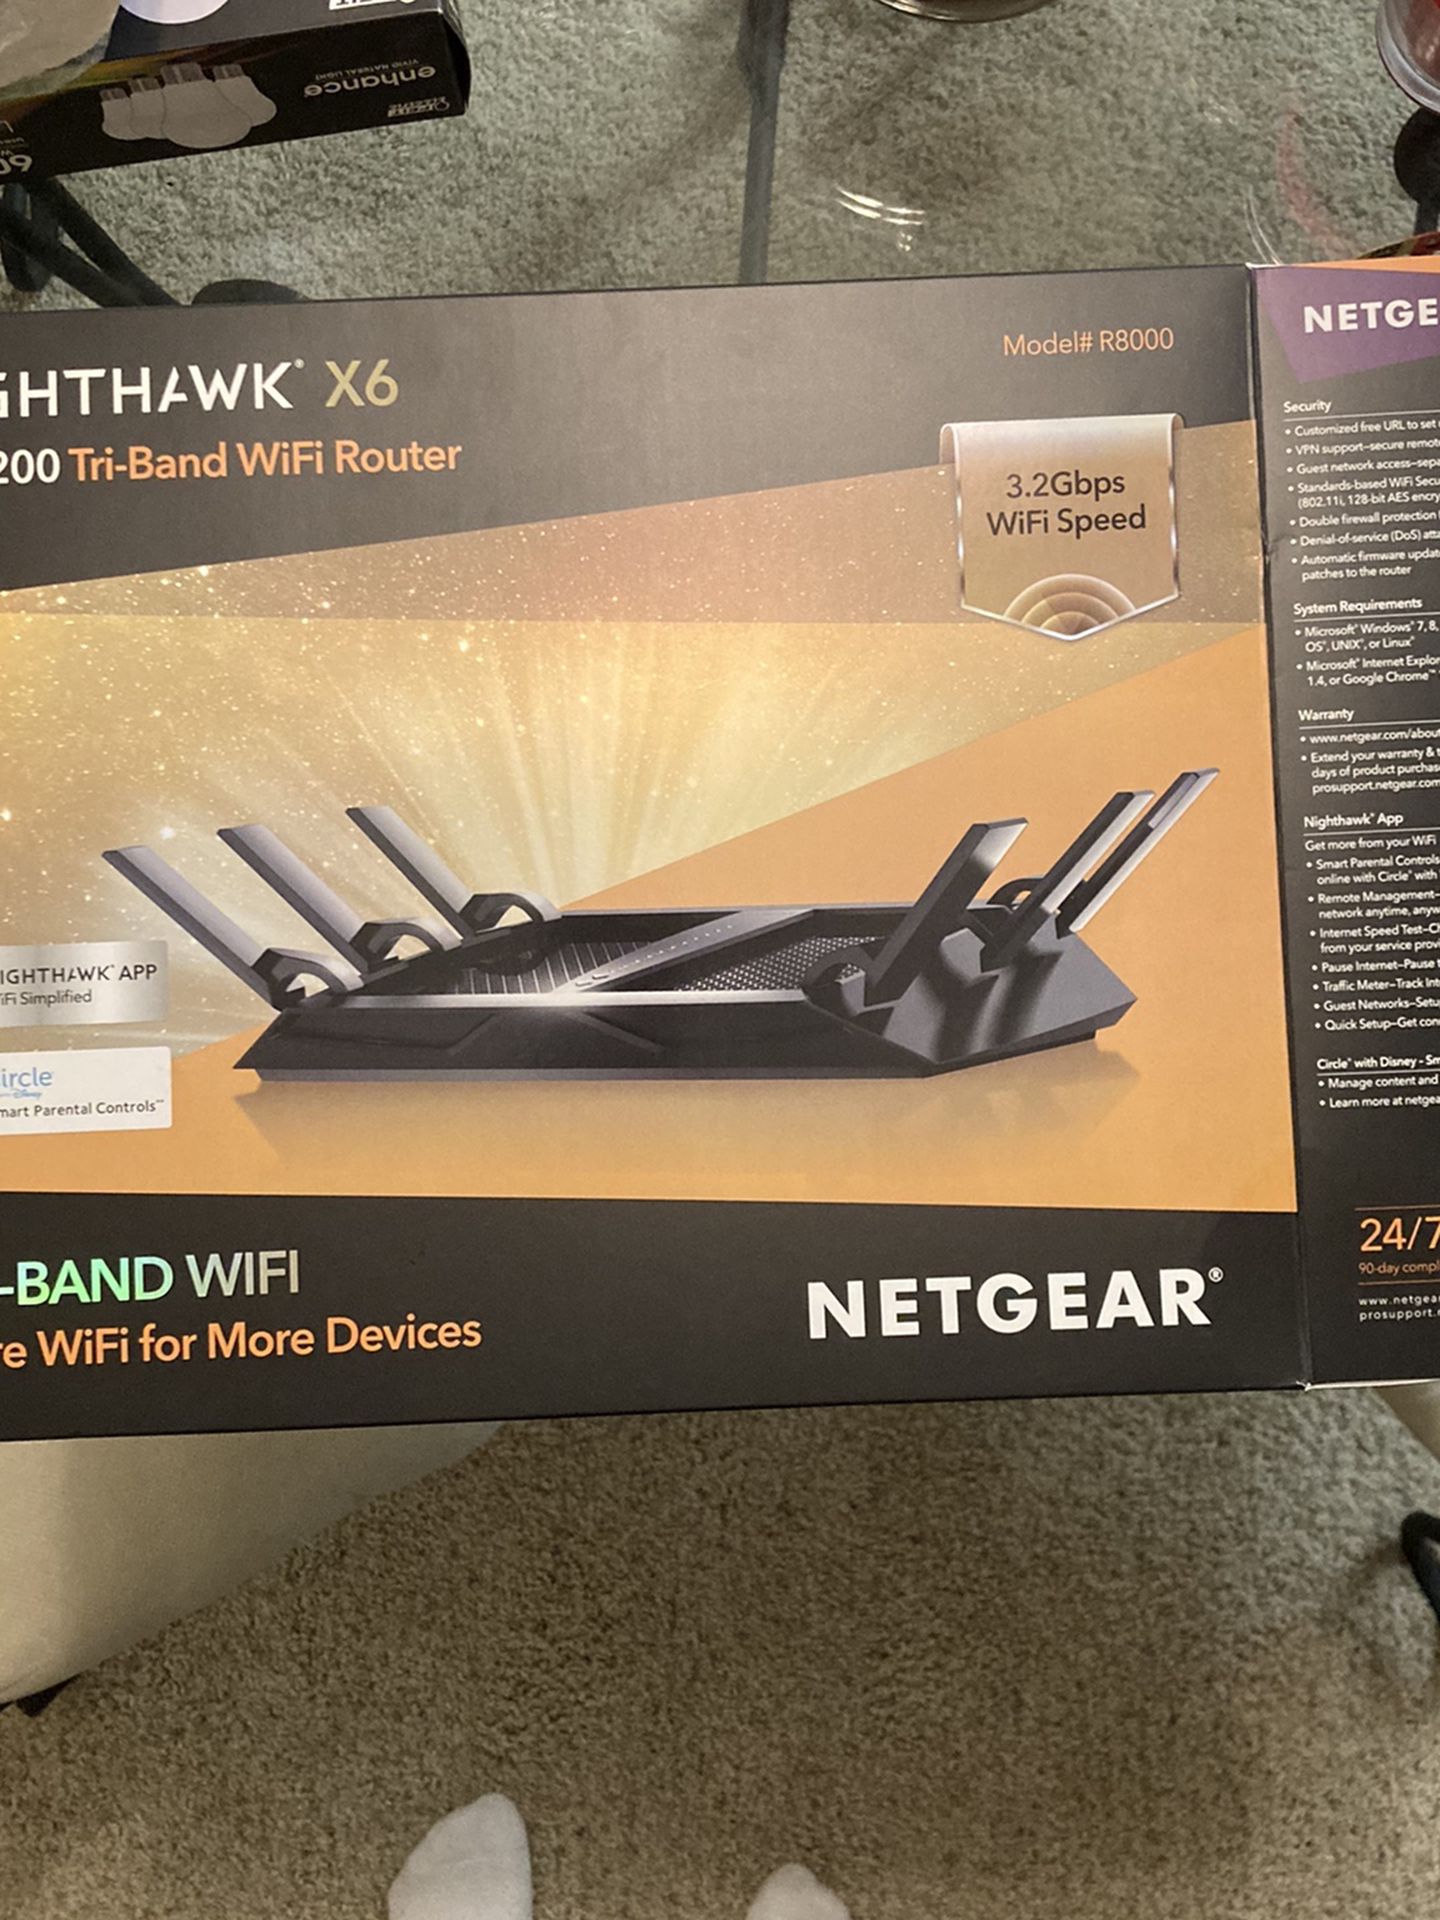 Nighthawk X6 AC 3200 Tri-band WiFi Router